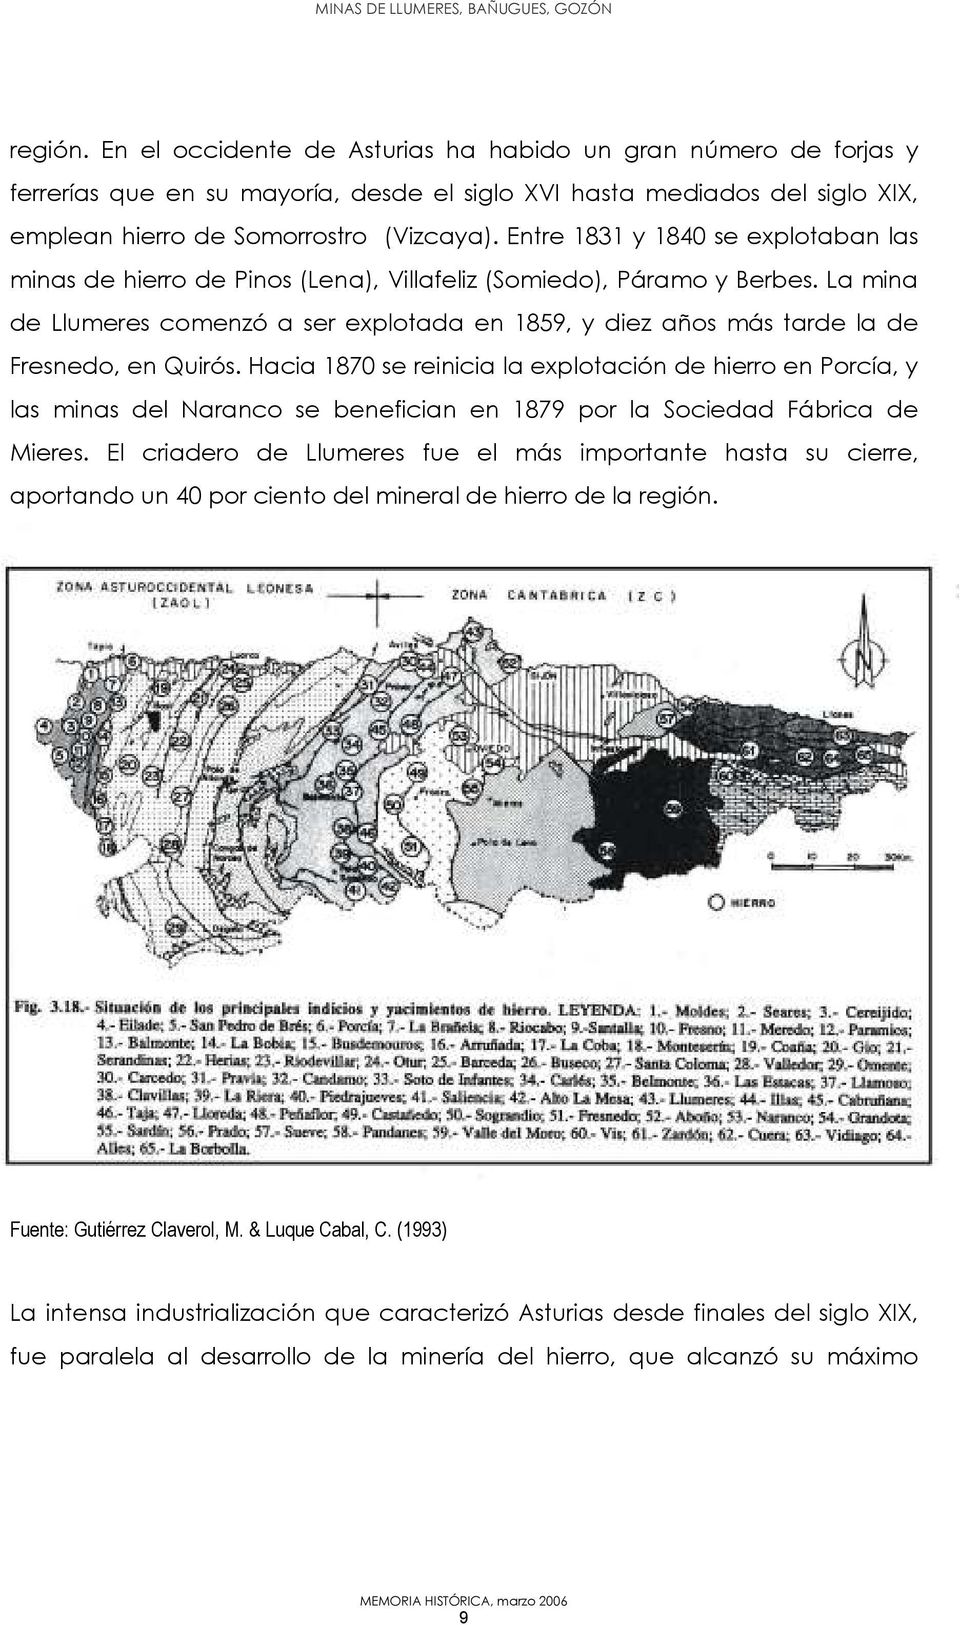 La mina de Llumeres comenzó a ser explotada en 1859, y diez años más tarde la de Fresnedo, en Quirós.